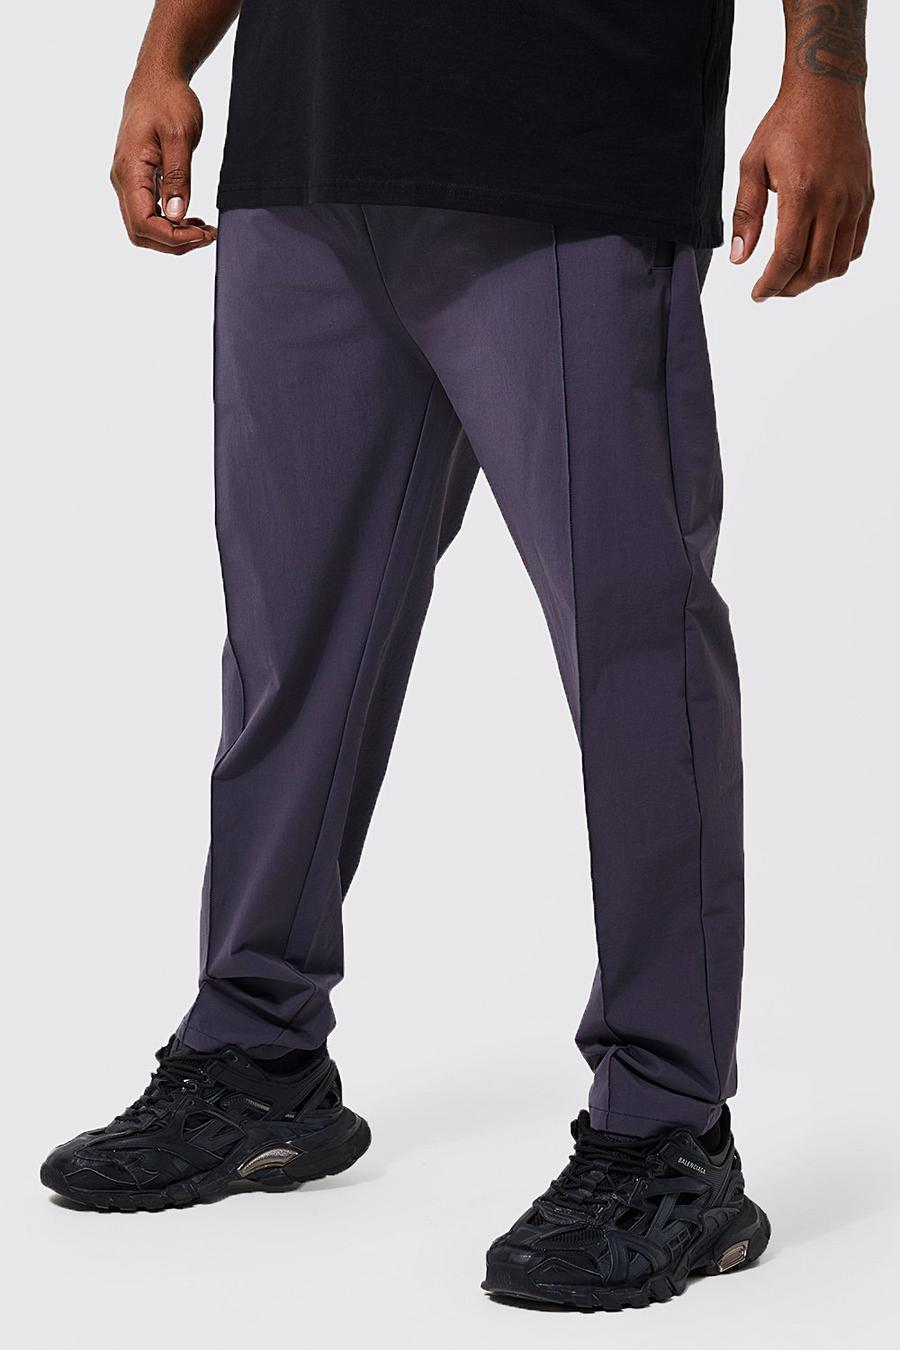 Pantaloni tecnici Plus Size Slim Fit con pieghe frontali, Dark grey